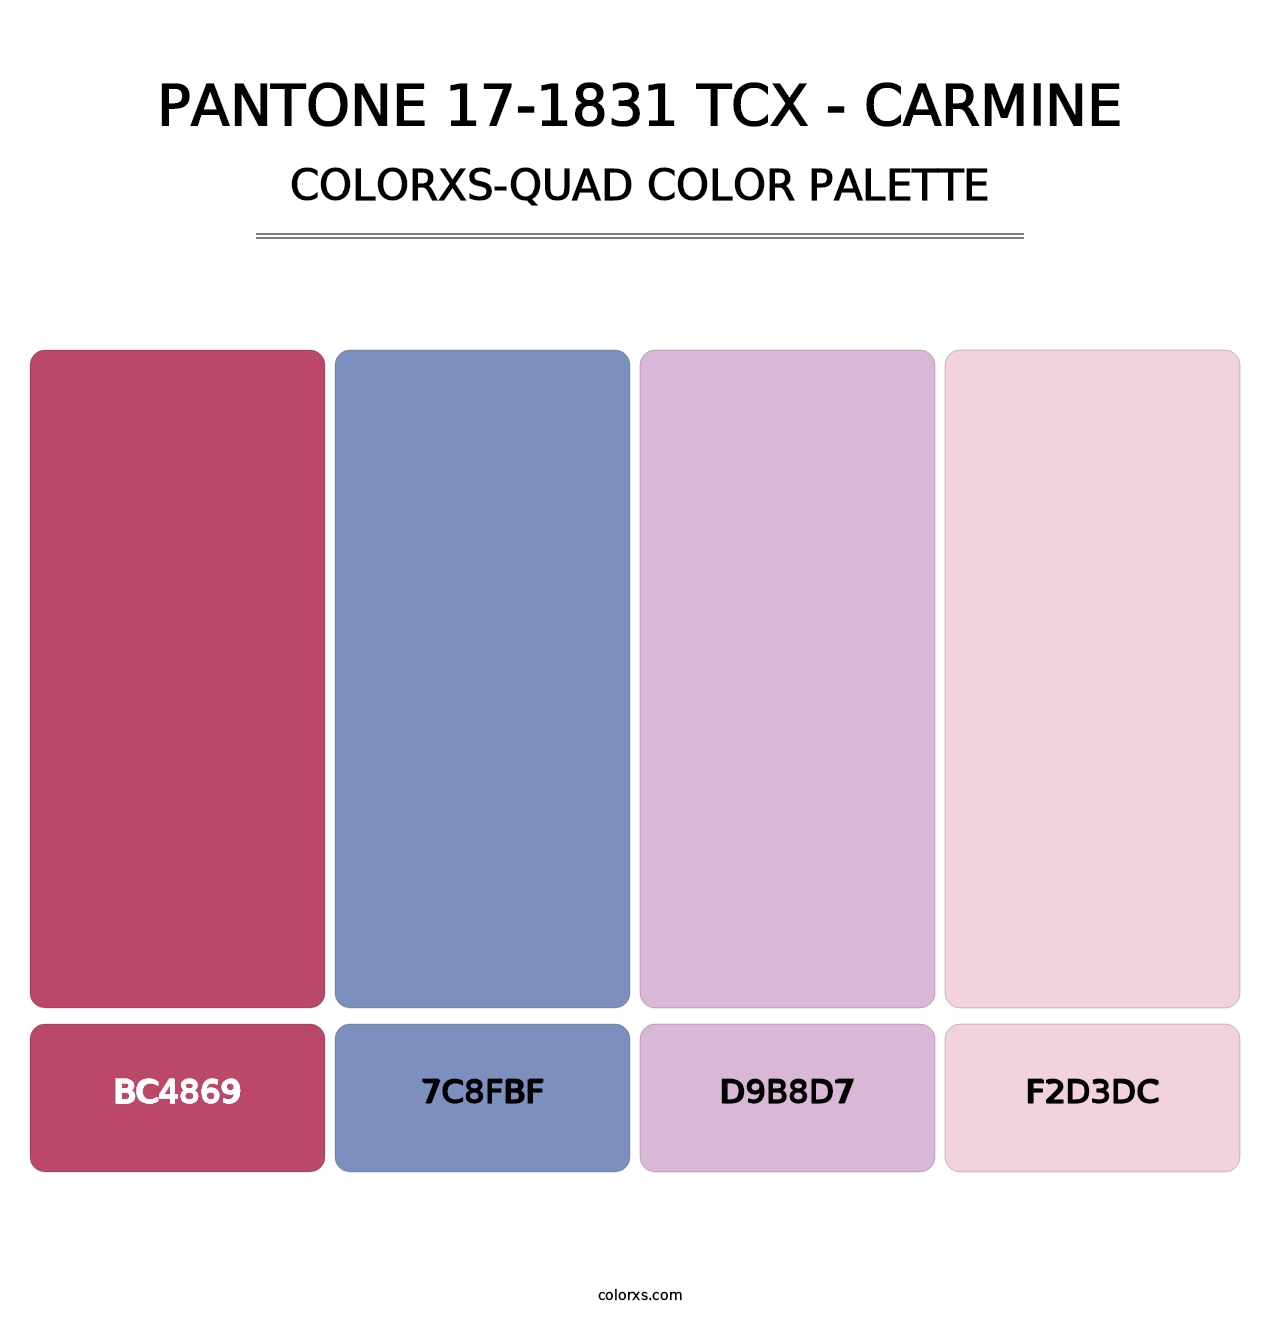 PANTONE 17-1831 TCX - Carmine - Colorxs Quad Palette